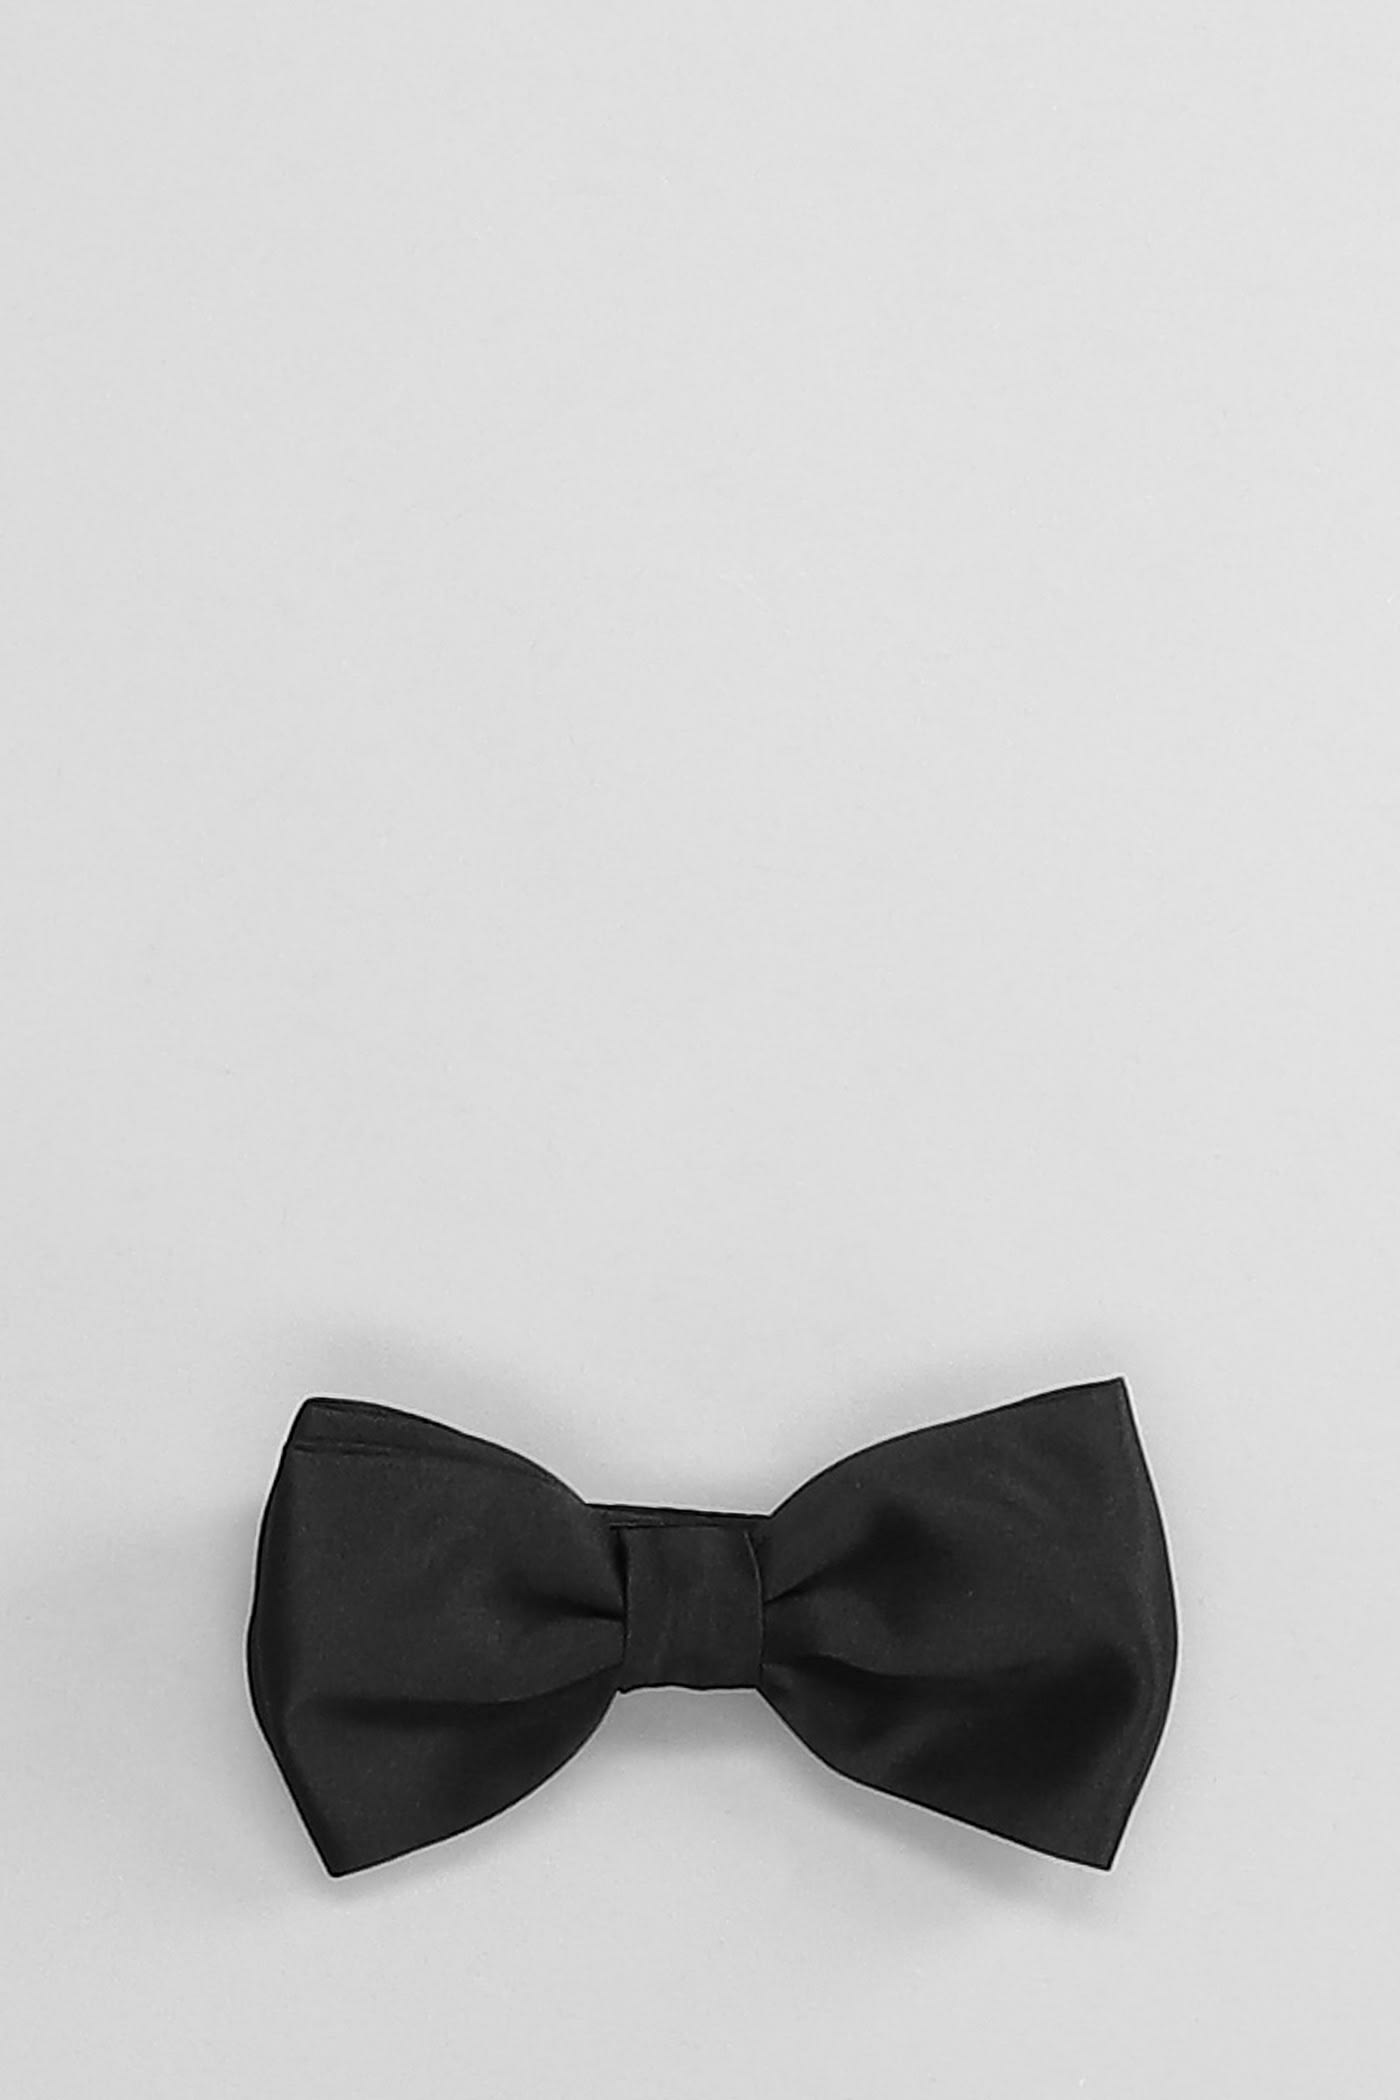 Tagliatore Tie In Black Polyester